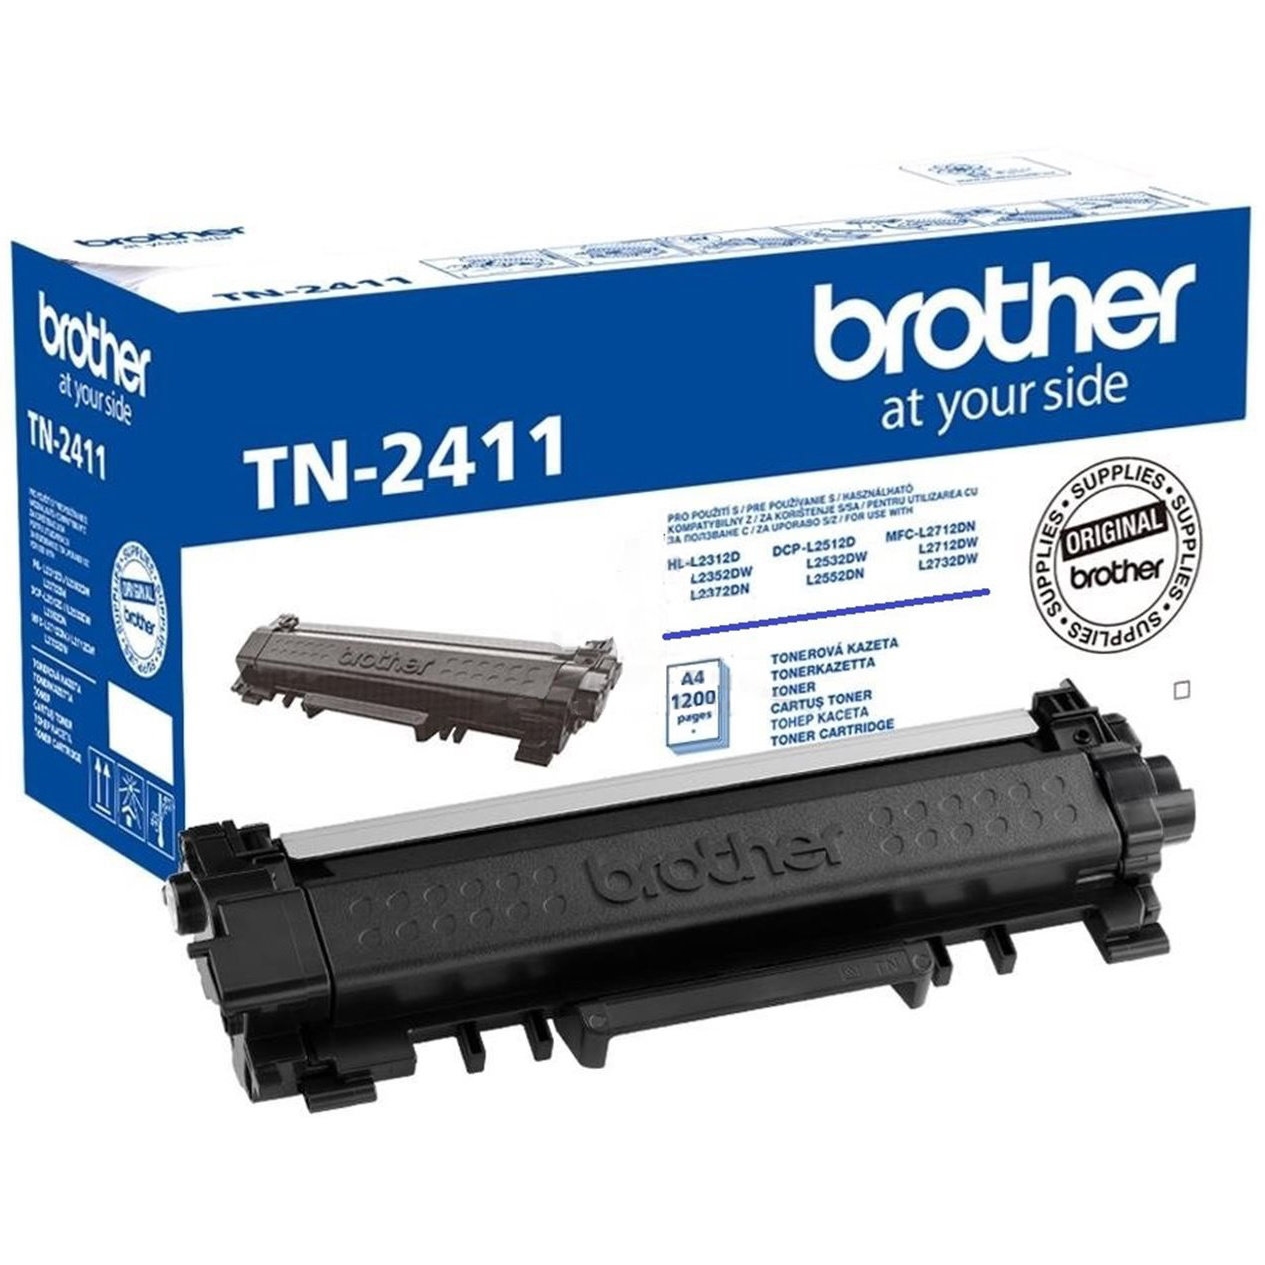 Toner Brother TN-2411, HL-L2312D, DCP-L2512D, MFC-L2712DN, black, originál